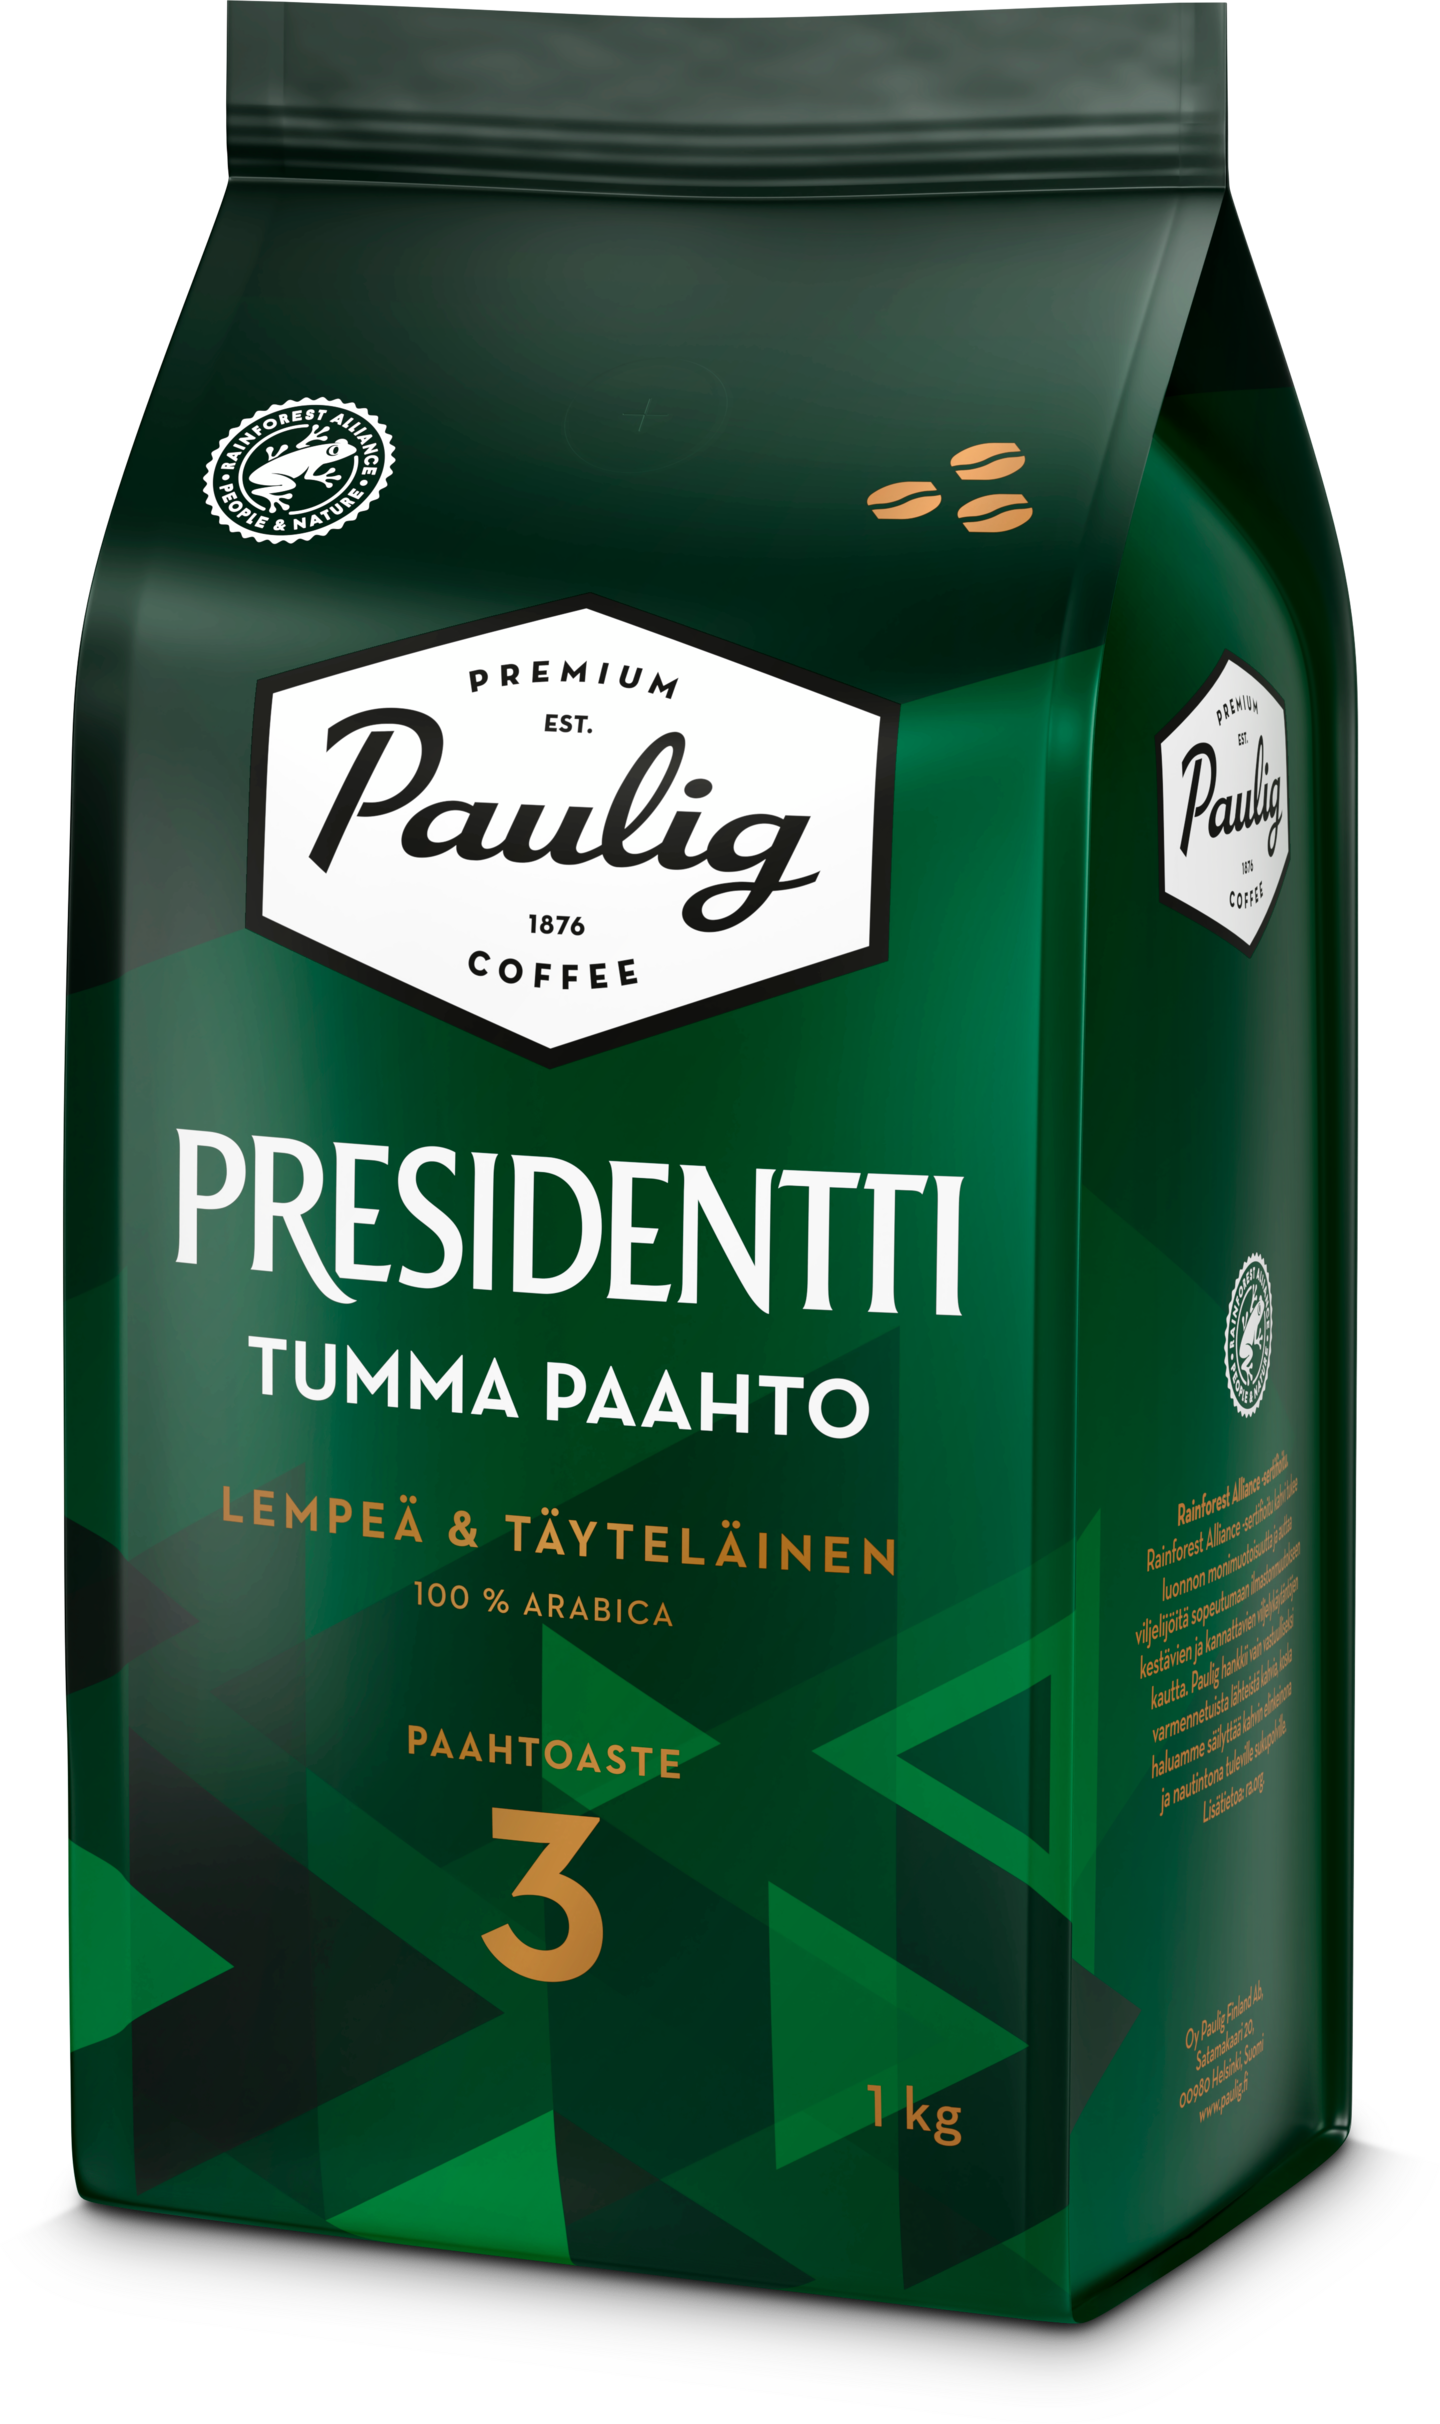 Presidentti Tumma Paahto kahvi 1kg papu